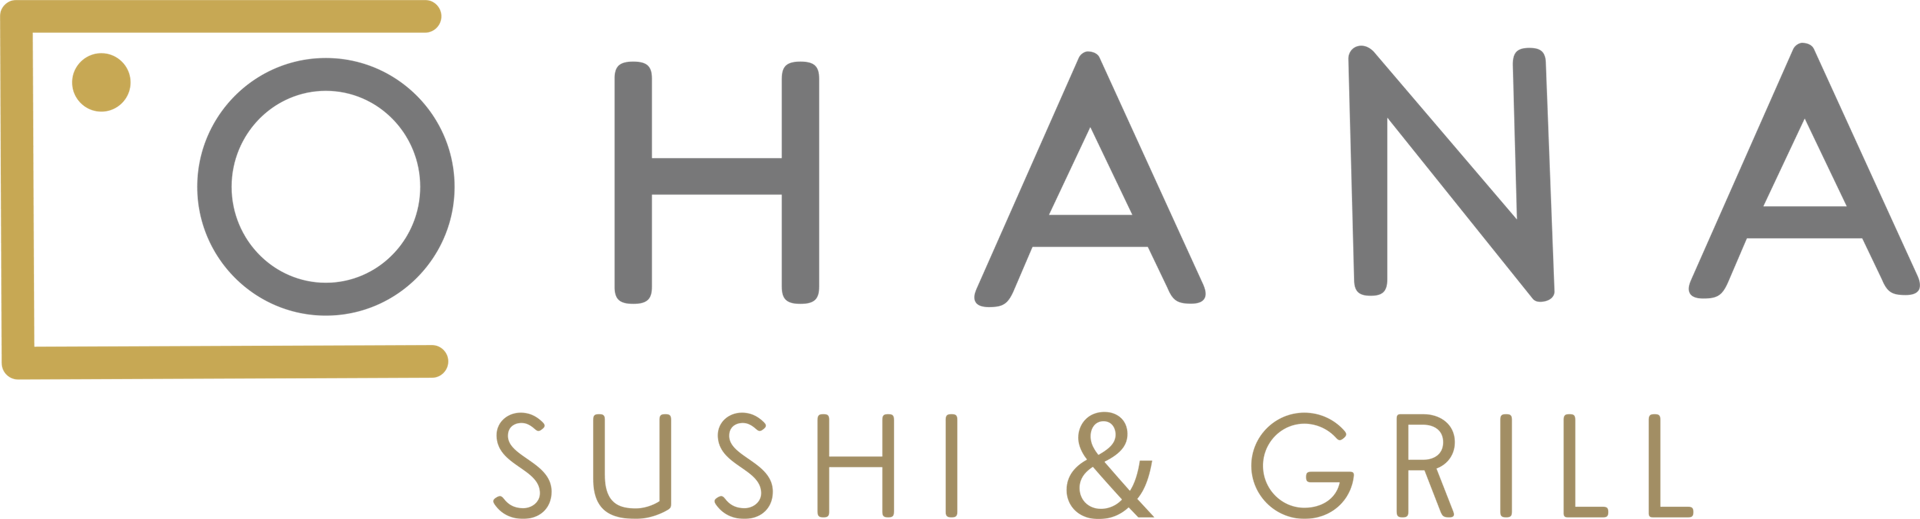 Ohana sushi and grill logo